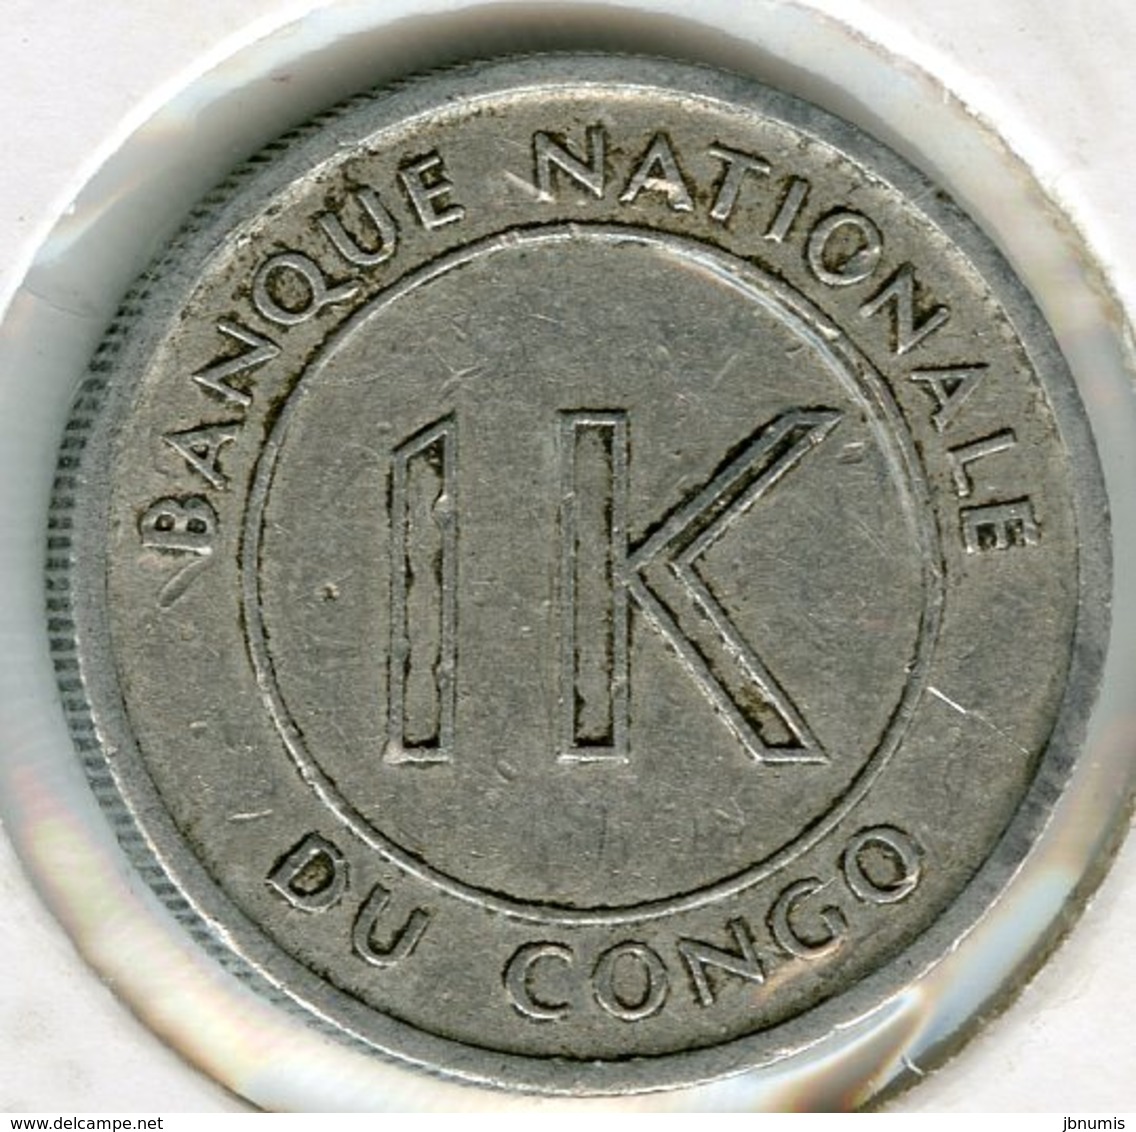 Congo 1 Likuta 1967 KM 8 - Congo (Rép. Démocratique, 1964-70)